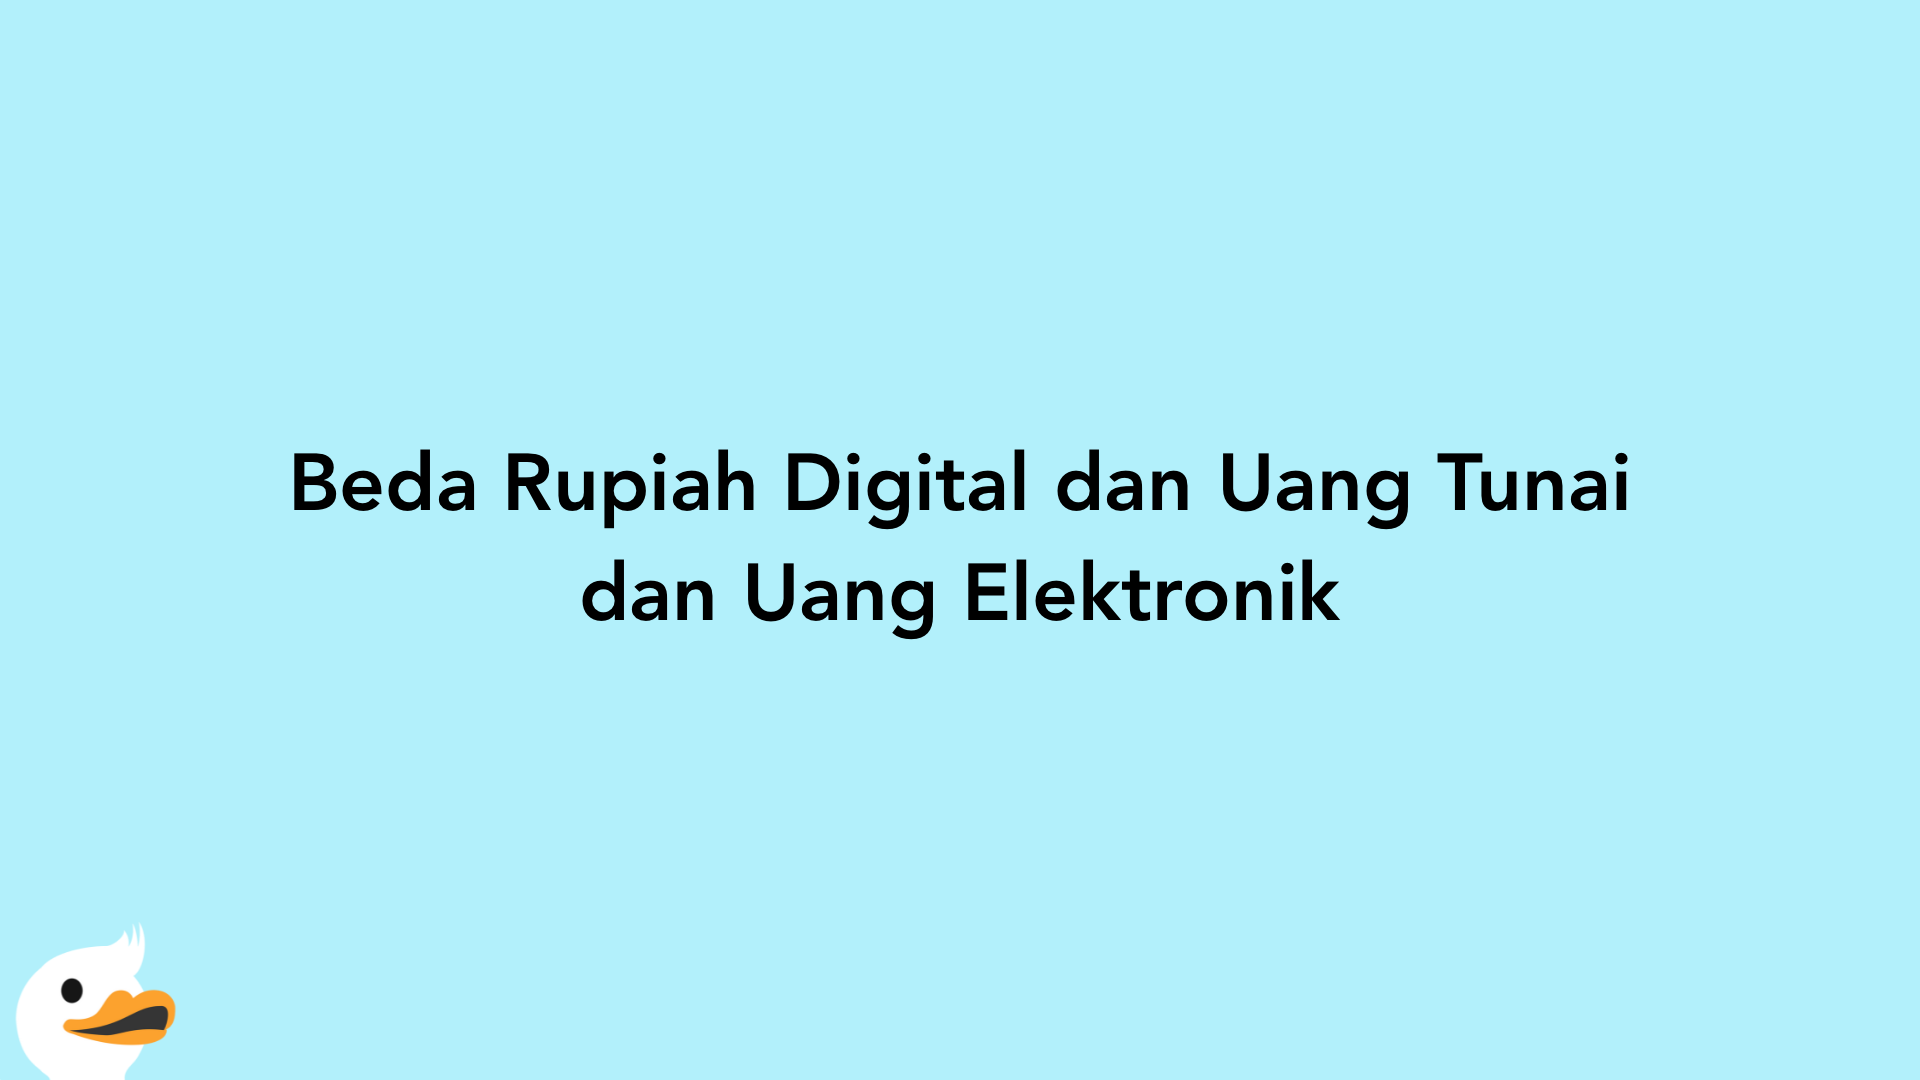 Beda Rupiah Digital dan Uang Tunai dan Uang Elektronik